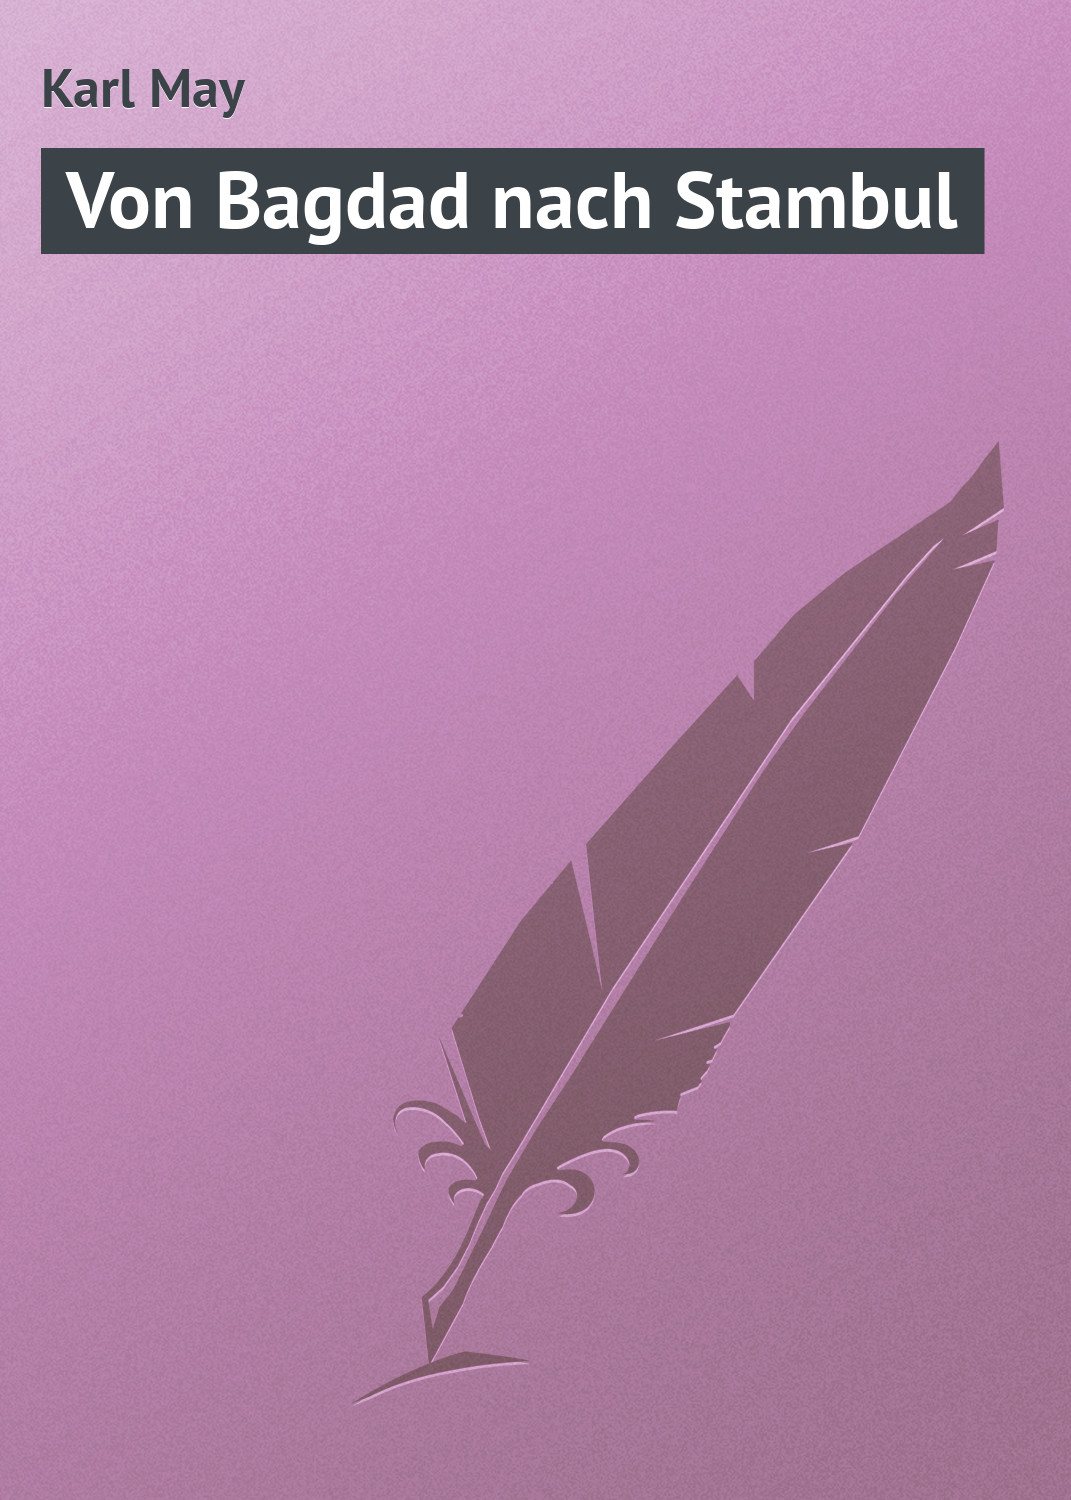 Книга Von Bagdad nach Stambul из серии , созданная Karl May, может относится к жанру Классическая проза. Стоимость электронной книги Von Bagdad nach Stambul с идентификатором 18405436 составляет 5.99 руб.